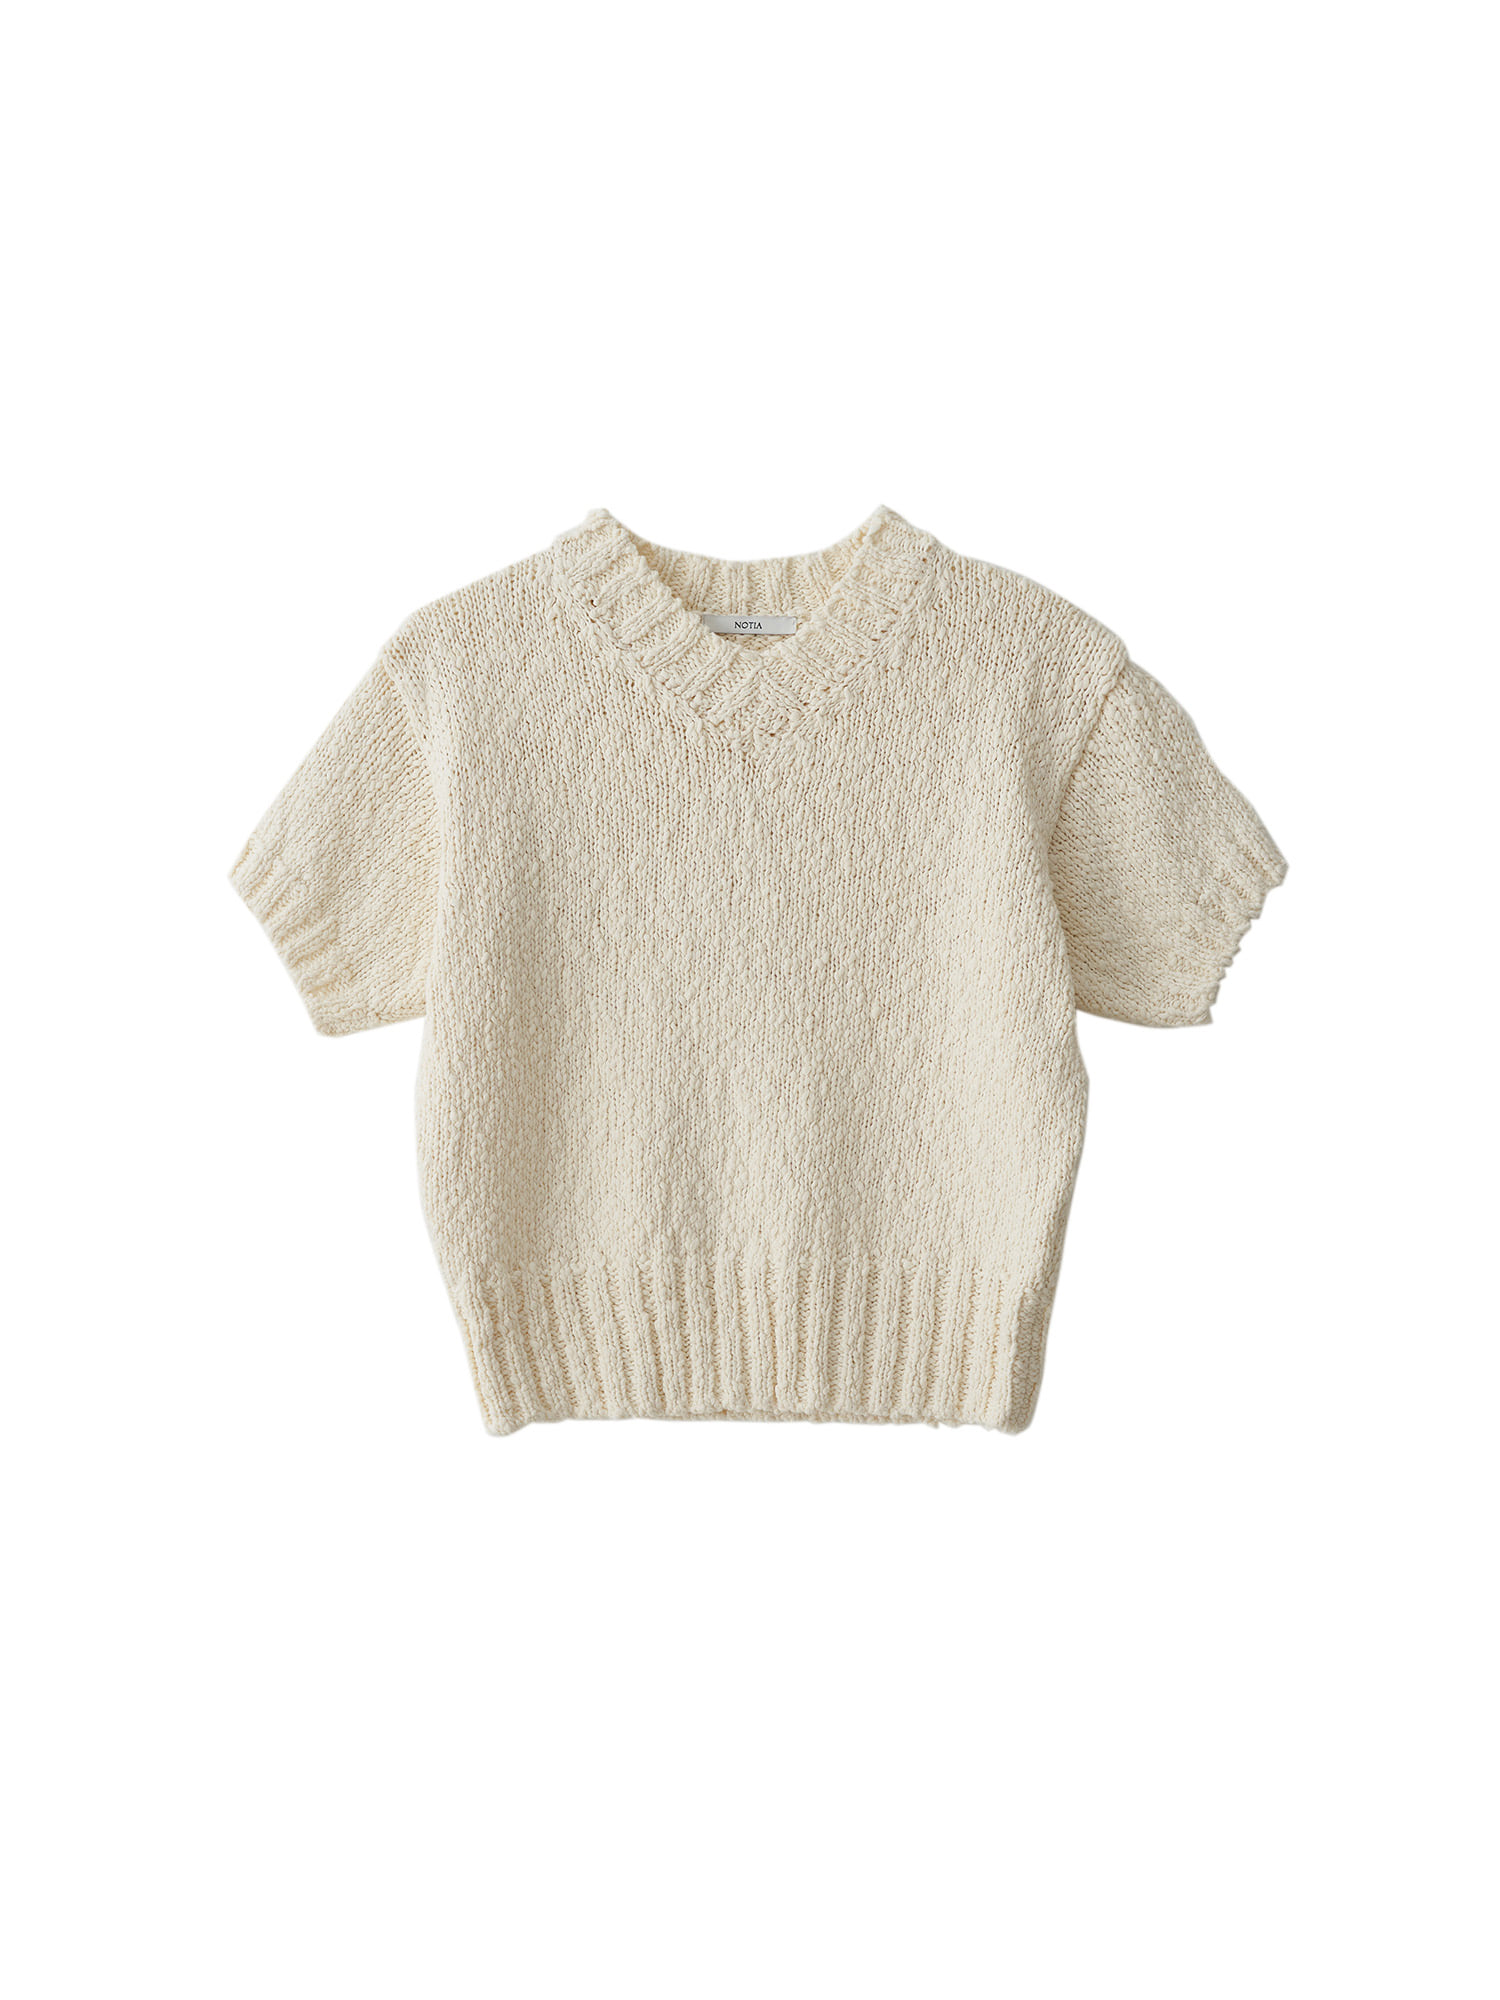 Organic Cotton V Neck Knit Top - Ivory